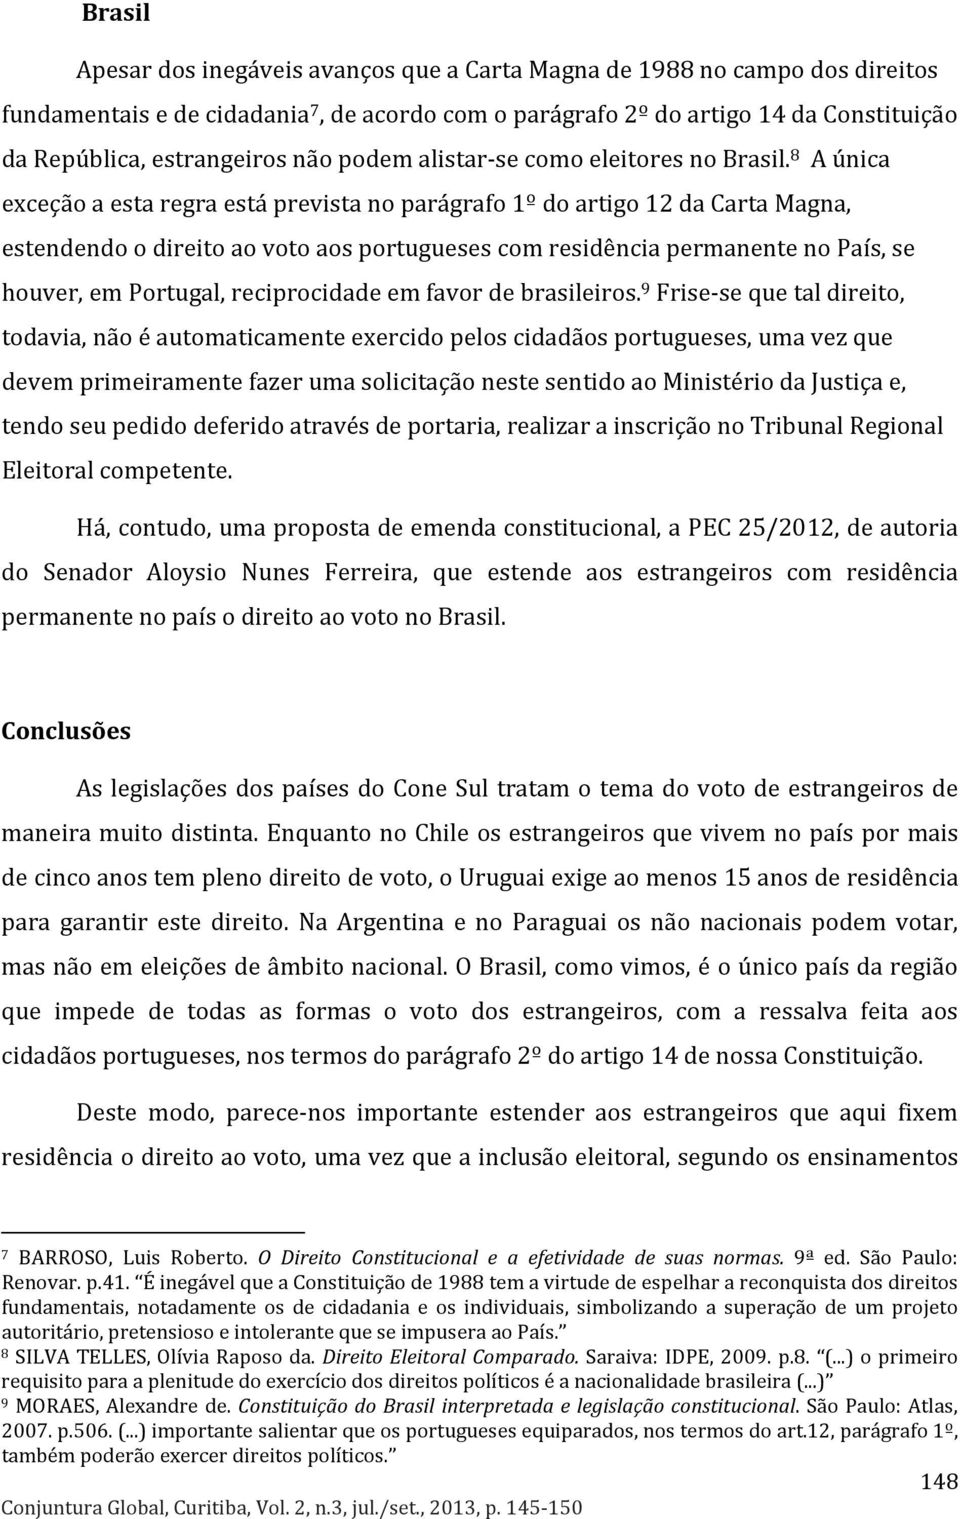 8 A única exceção a esta regra está prevista no parágrafo 1º do artigo 12 da Carta Magna, estendendo o direito ao voto aos portugueses com residência permanente no País, se houver, em Portugal,